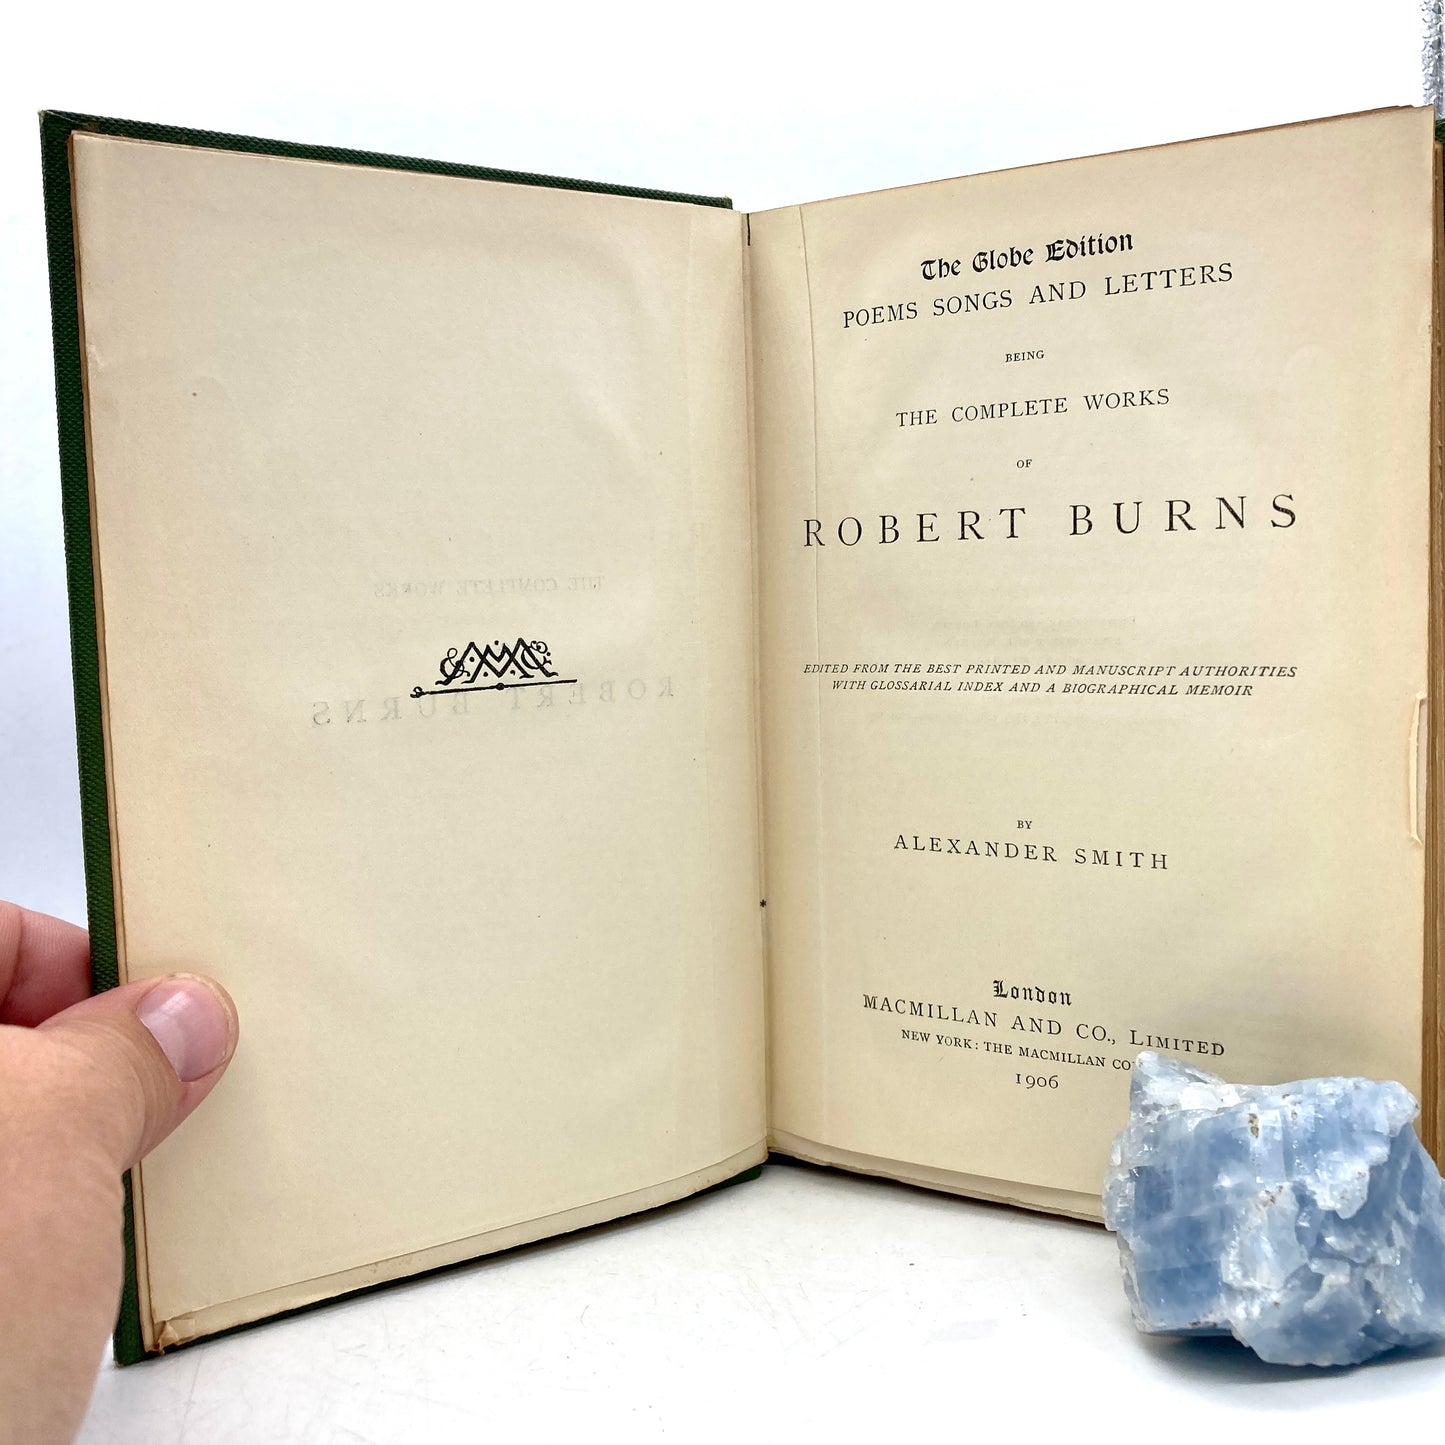 BURNS, Robert "The Complete Works of Robert Burns" [Macmillan, 1906]